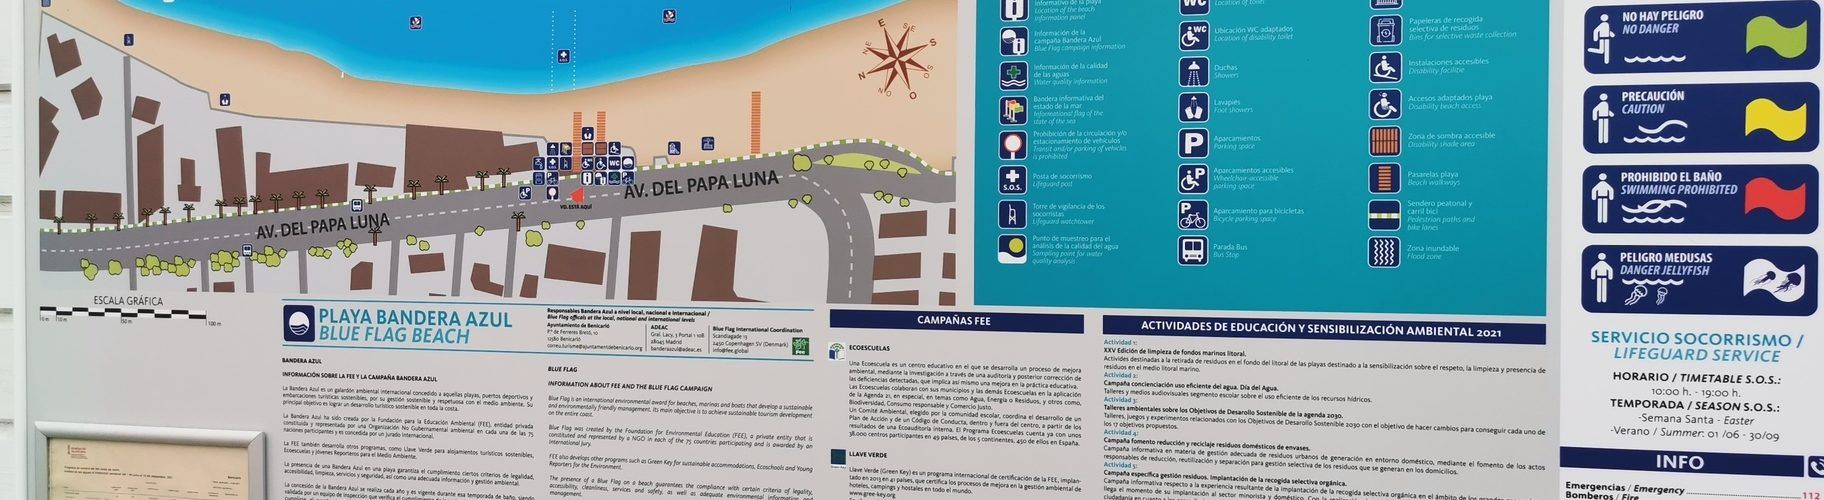 Compromís denuncia que l’Ajuntament de Benicarló exclou el valencià als cartells informatius de les platges del municipi